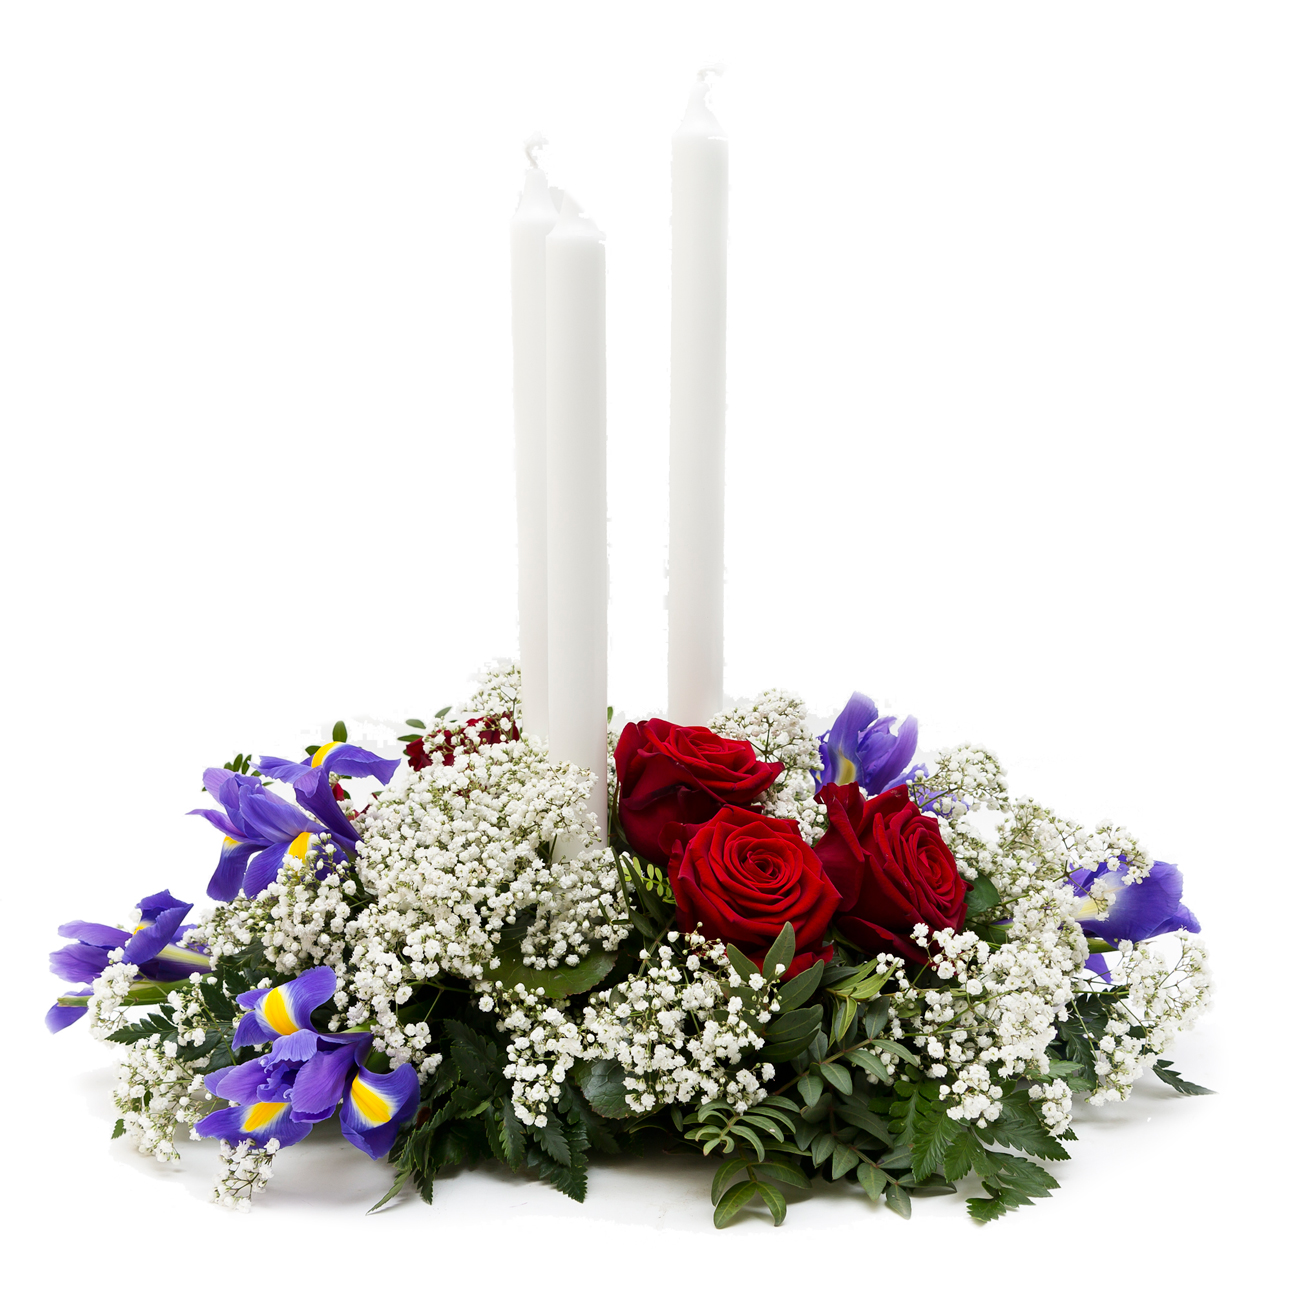 201 Låg begravningsdekoration. Röda rosor, blå iris och slöja. Ljus ingår.
Pris: 1200 kr